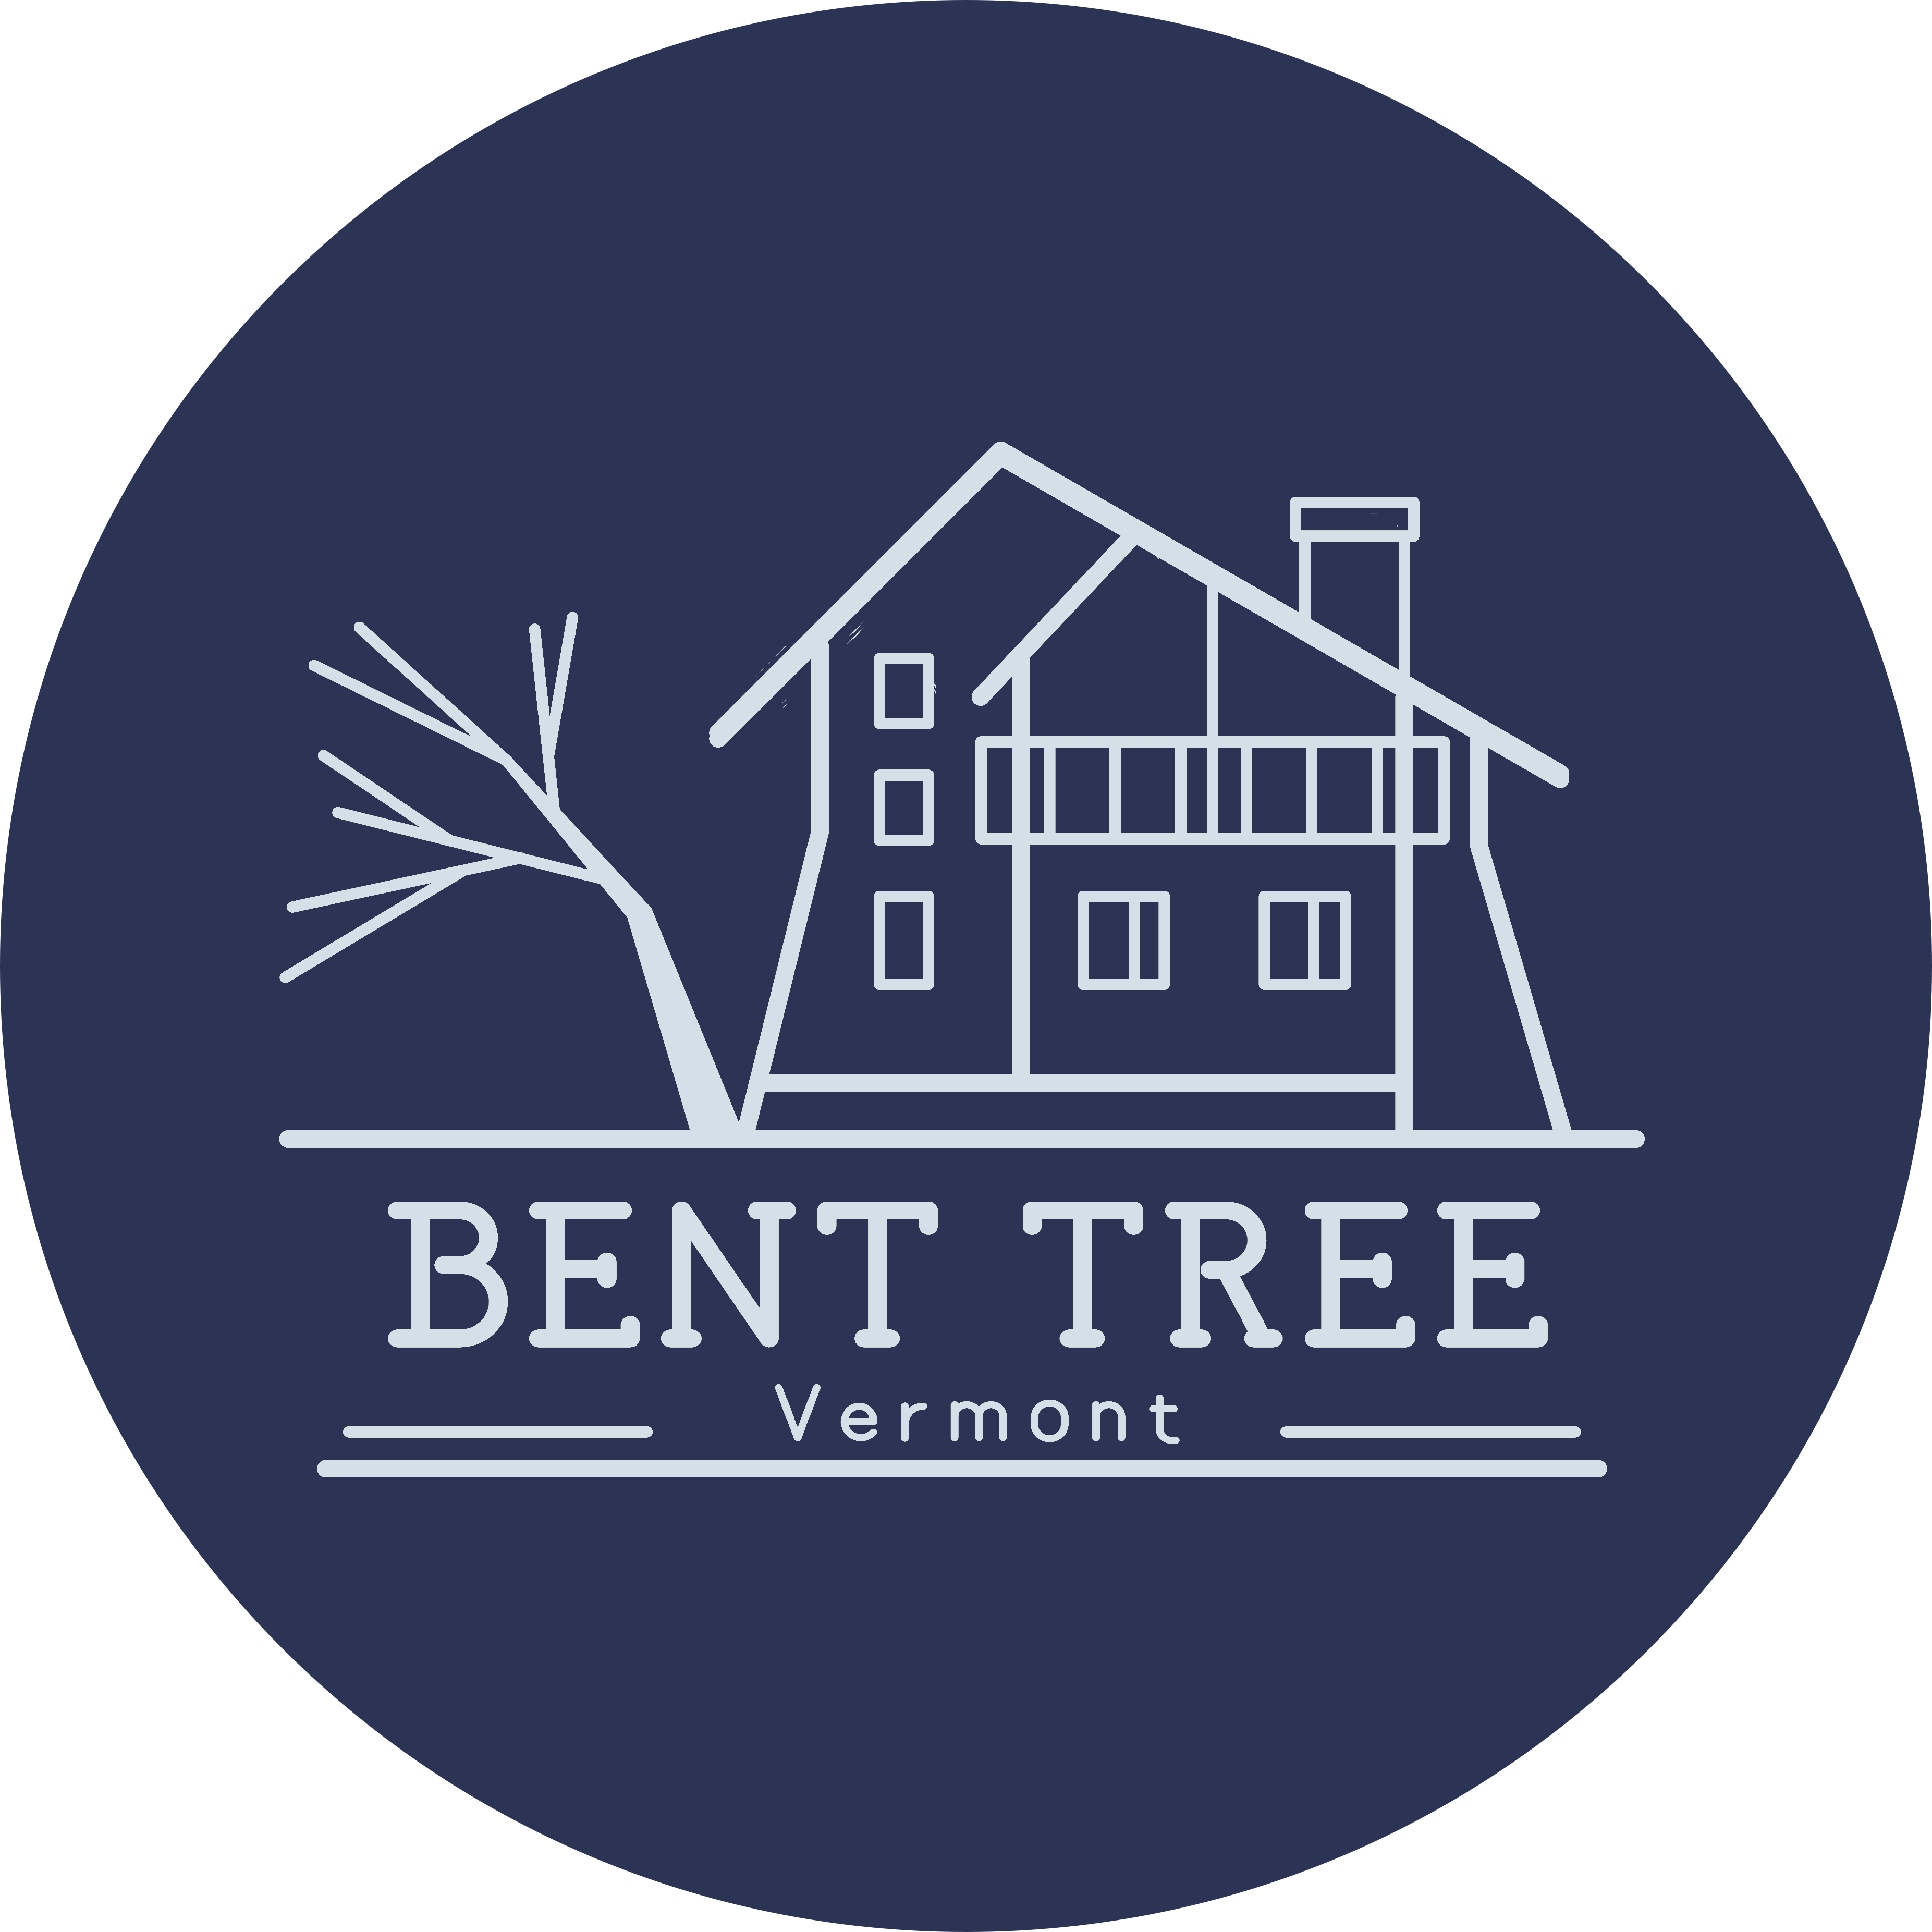 Bent Tree Vermont